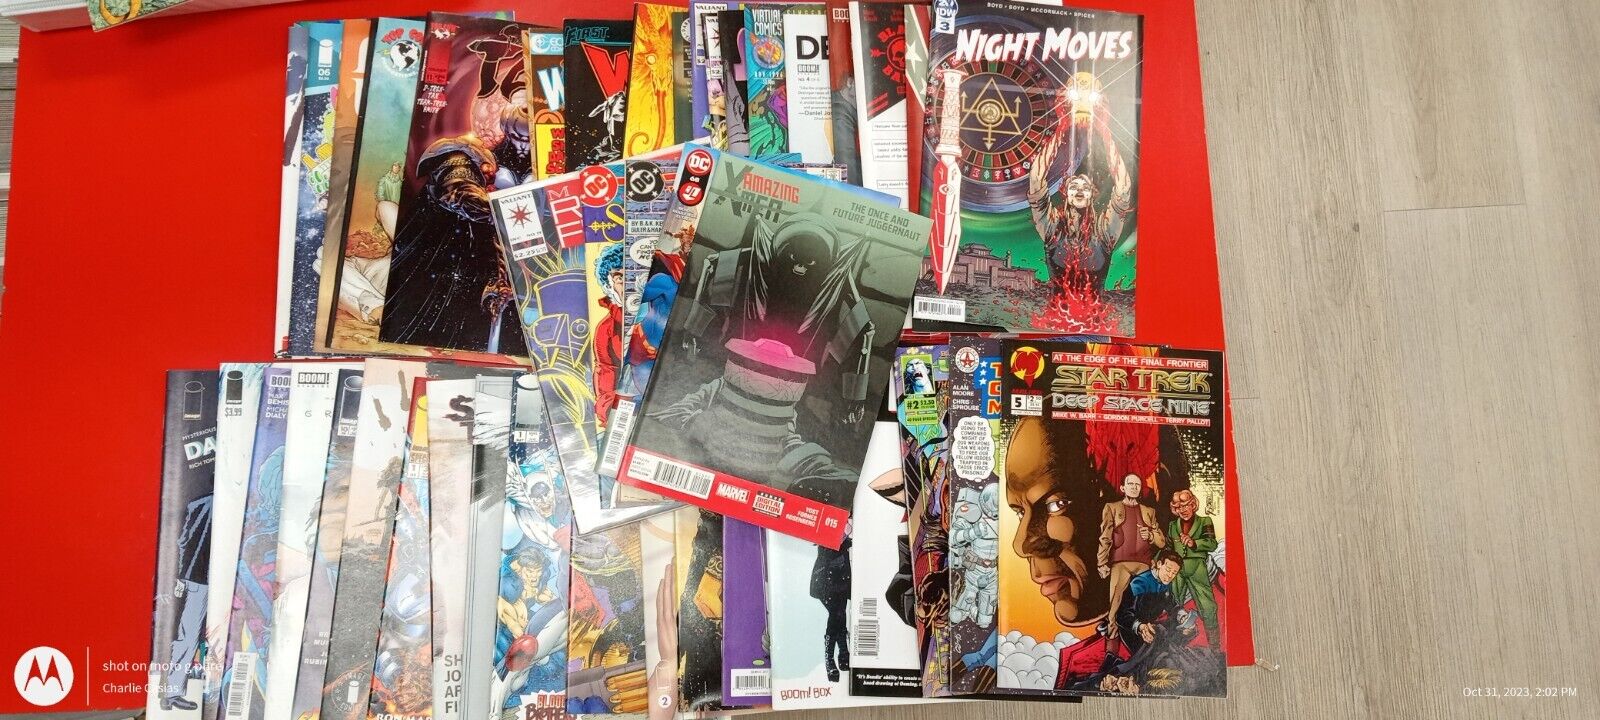 Huge 6lb Comic Book Lot - Over 40 DC, Marvel, and Mature Genre Comics